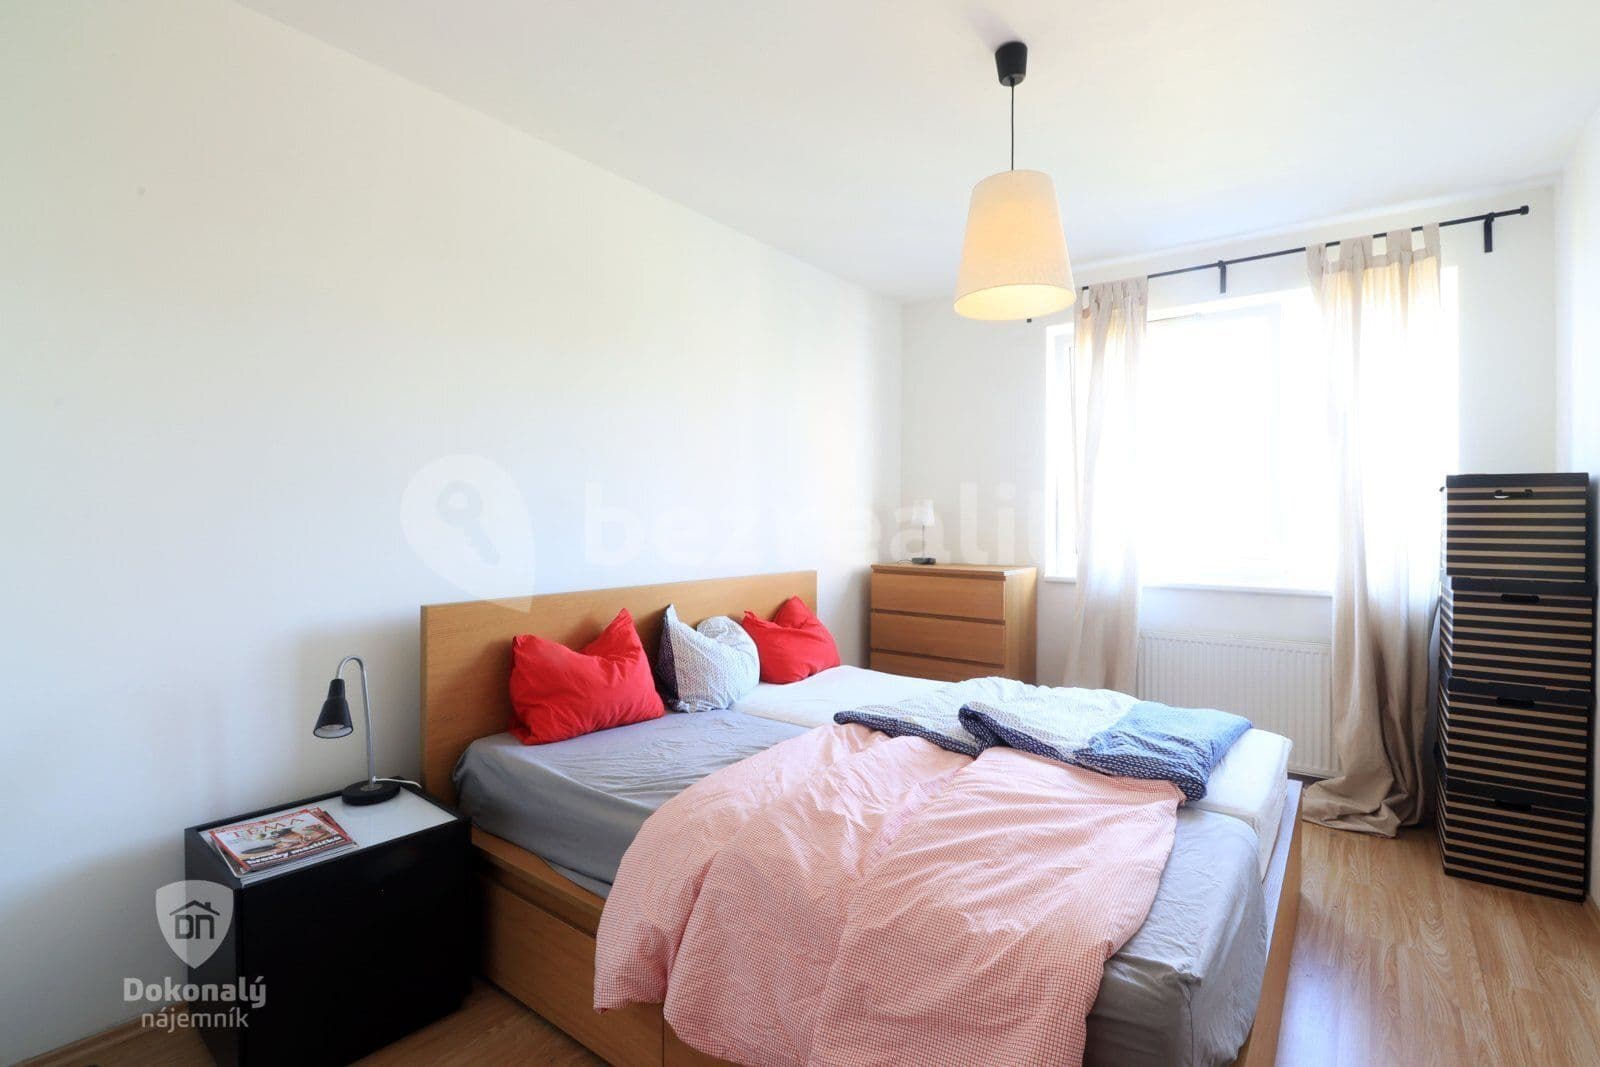 1 bedroom with open-plan kitchen flat to rent, 56 m², V dolině, Prague, Prague